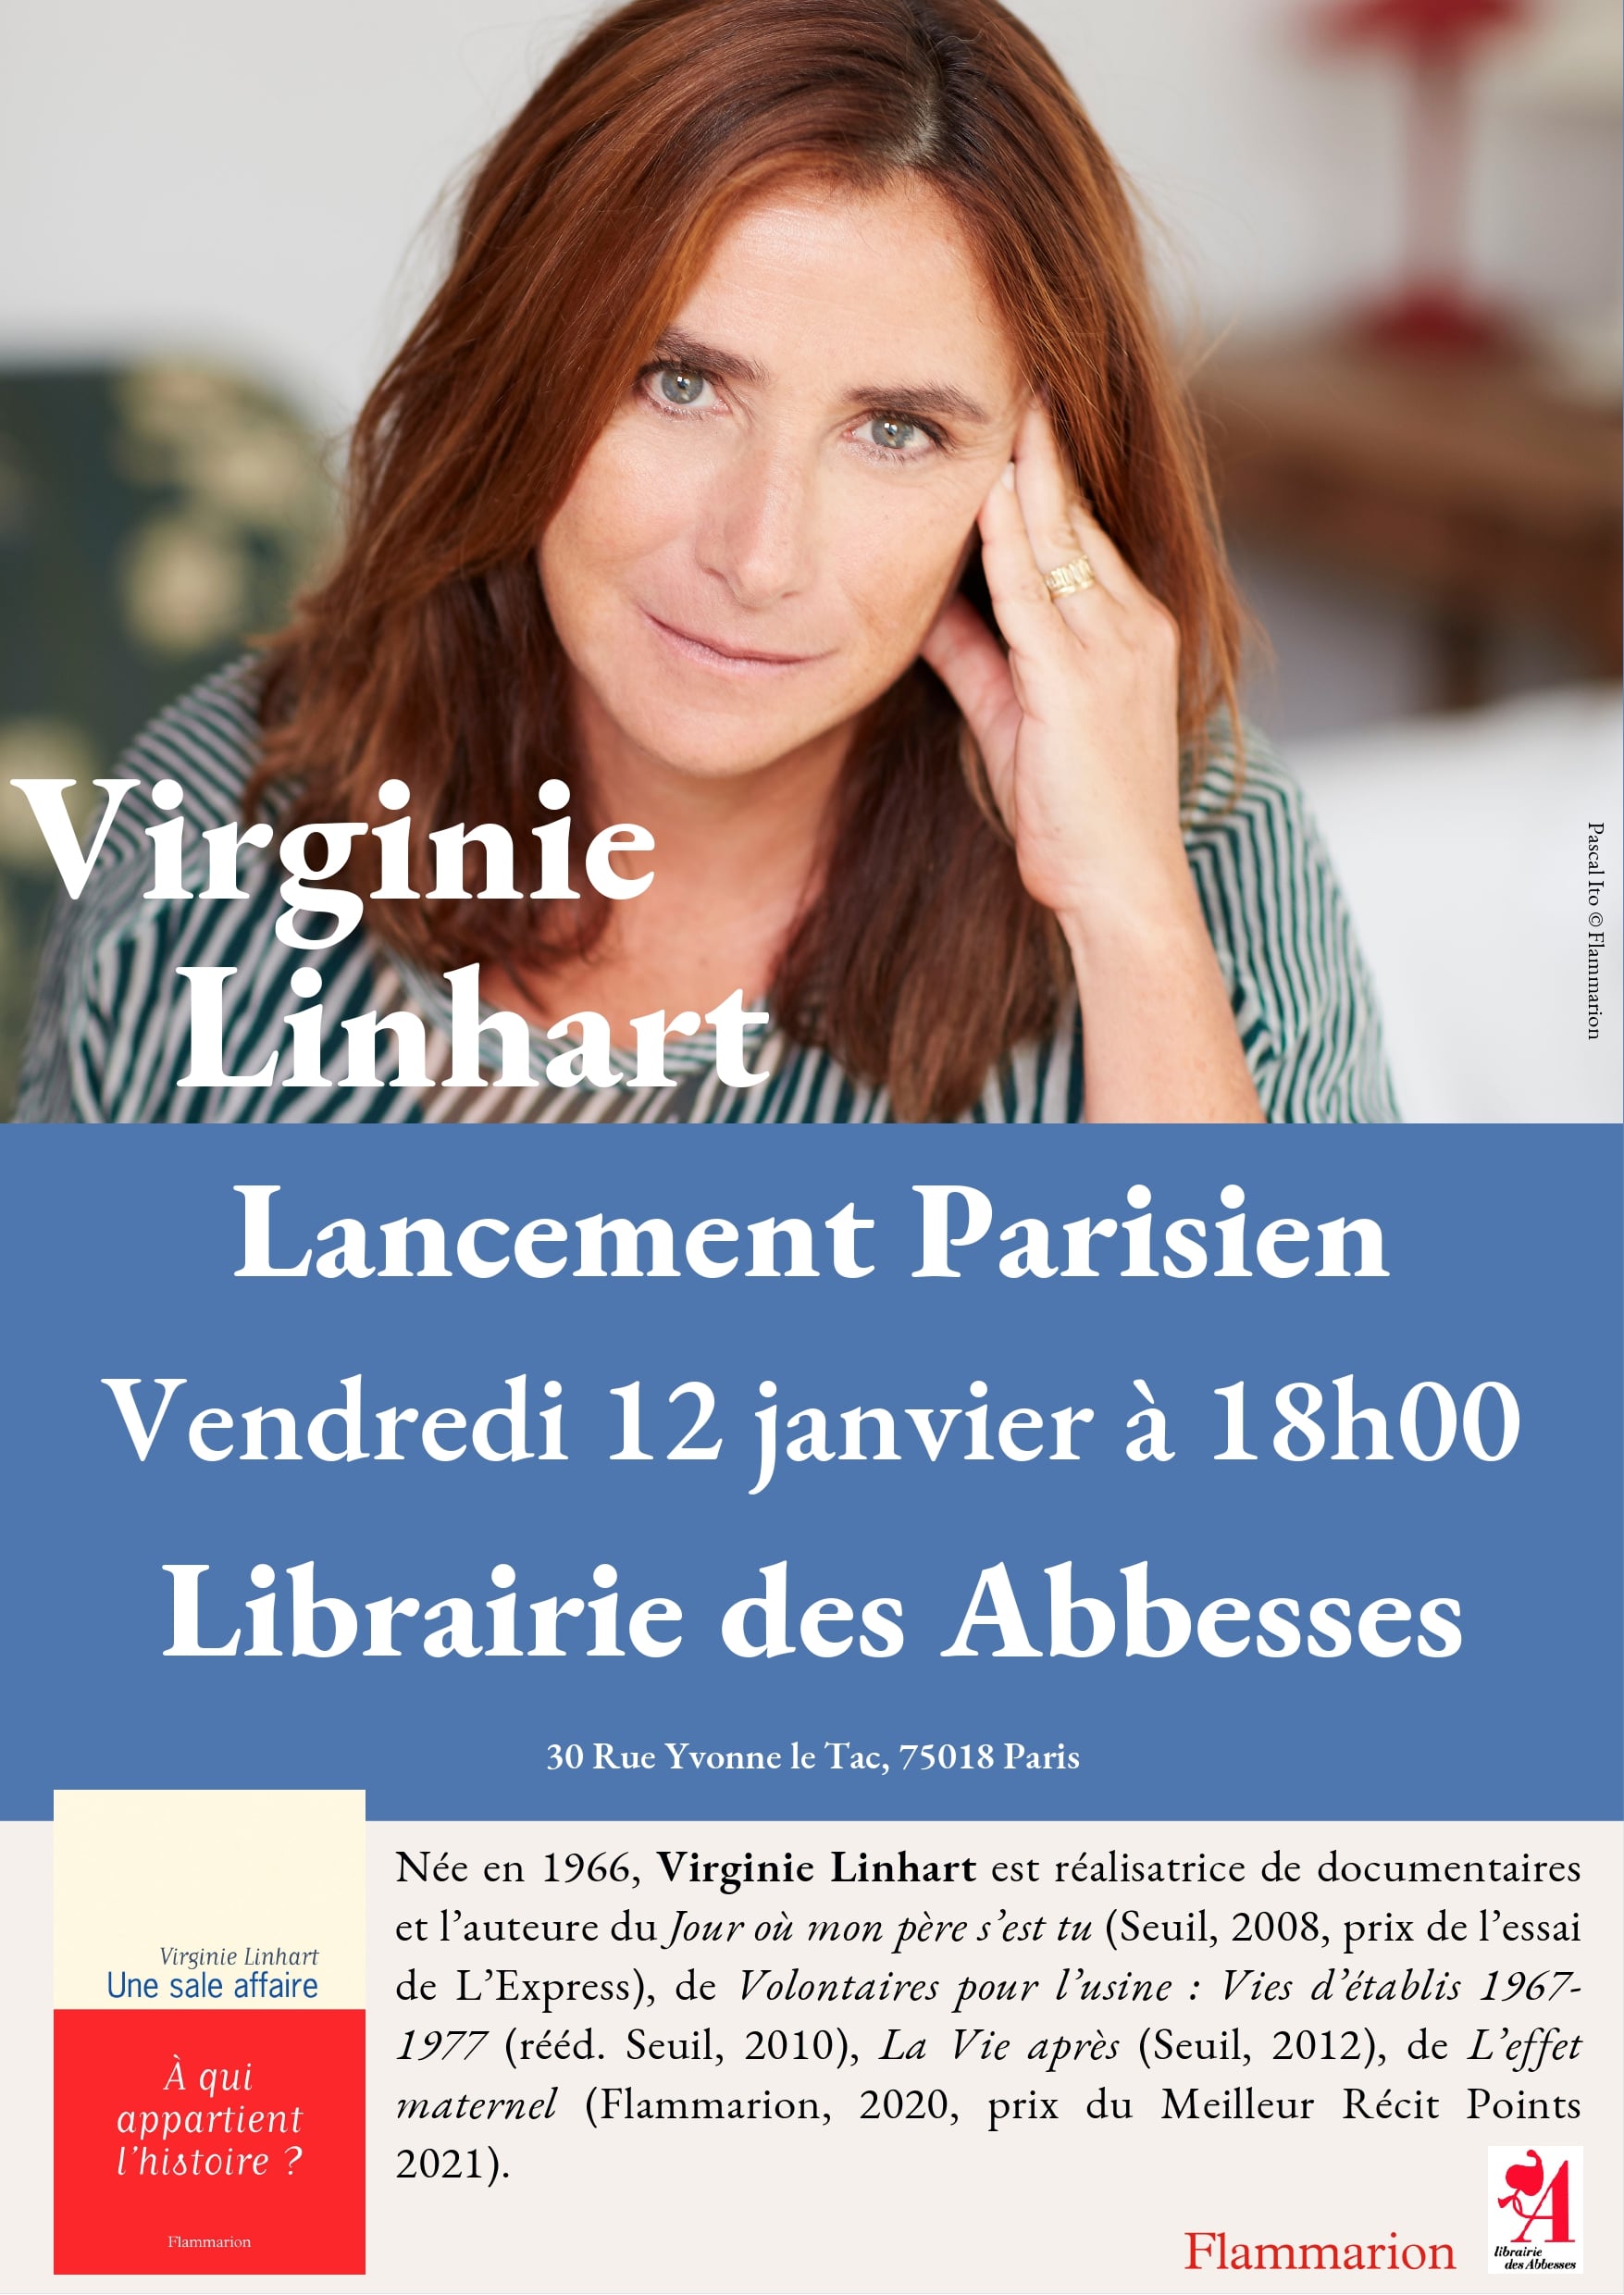 Librairie des Abbesses - Vendredi 12 janvier à 18h00 Virginie Linhart